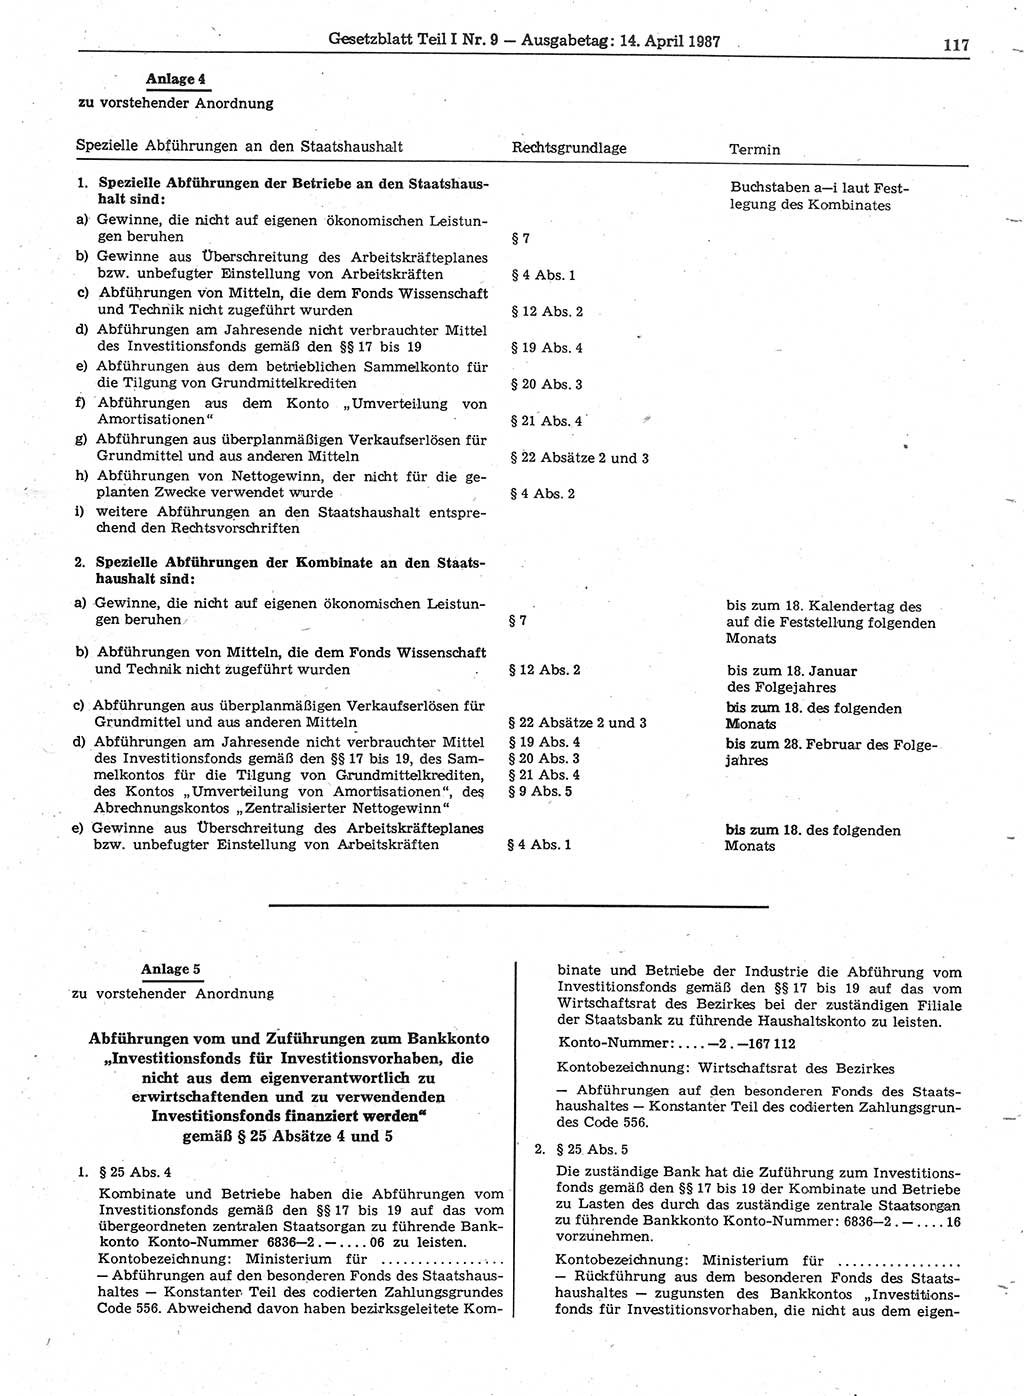 Gesetzblatt (GBl.) der Deutschen Demokratischen Republik (DDR) Teil Ⅰ 1987, Seite 117 (GBl. DDR Ⅰ 1987, S. 117)